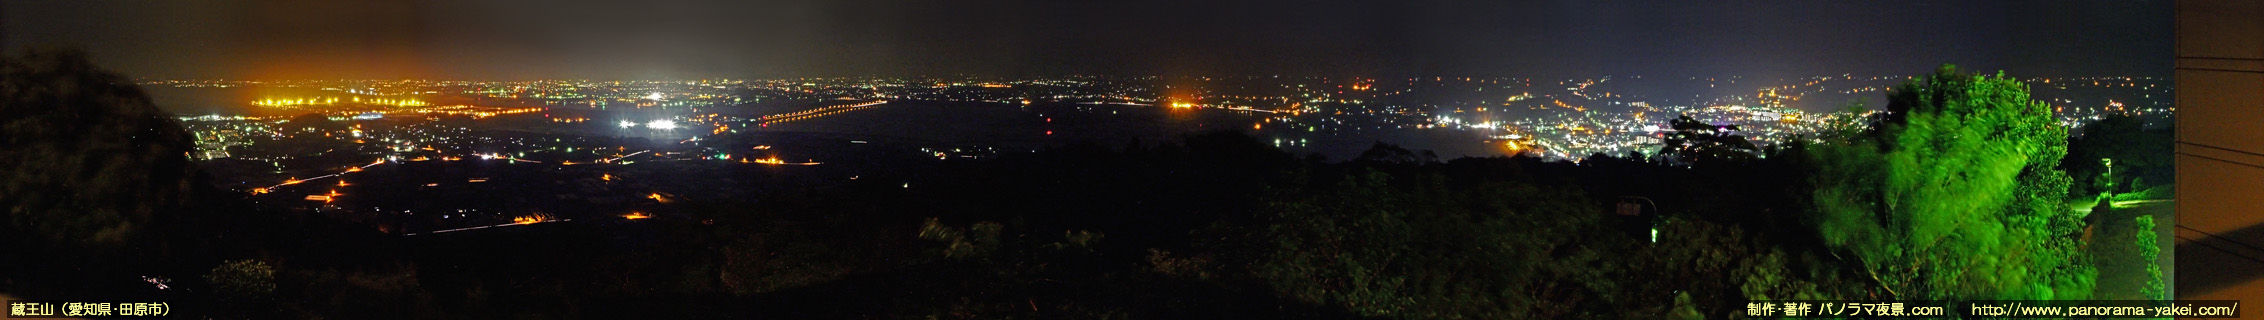 蔵王山展望台からのパノラマ夜景写真